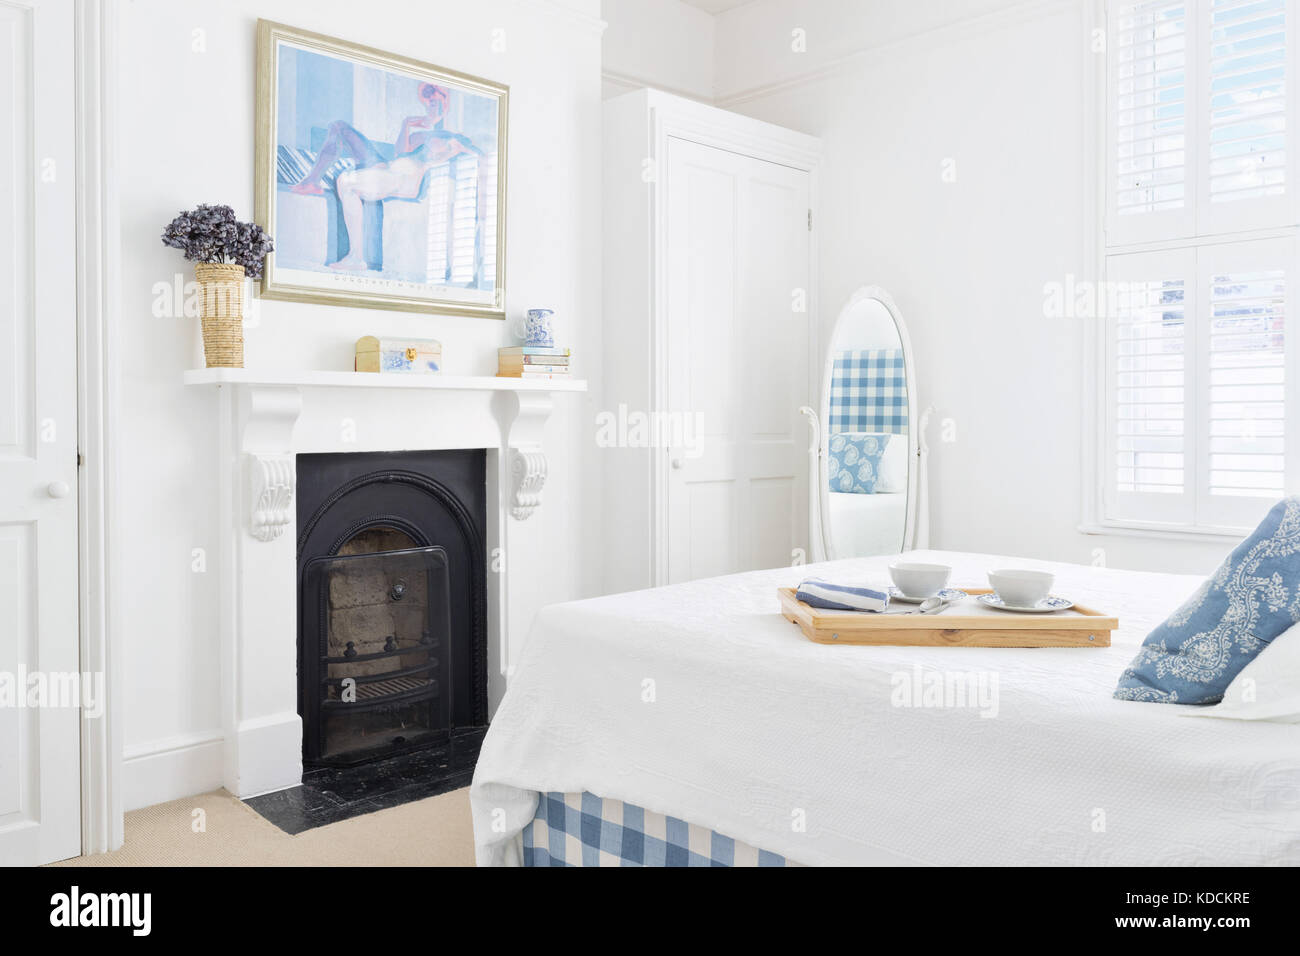 Un brillante fresco dormitorio victoriano reformado mostrando una ventana cerradas, una chimenea de hierro fundido y cama doble con una bandeja con el desayuno depositada en ella. Foto de stock